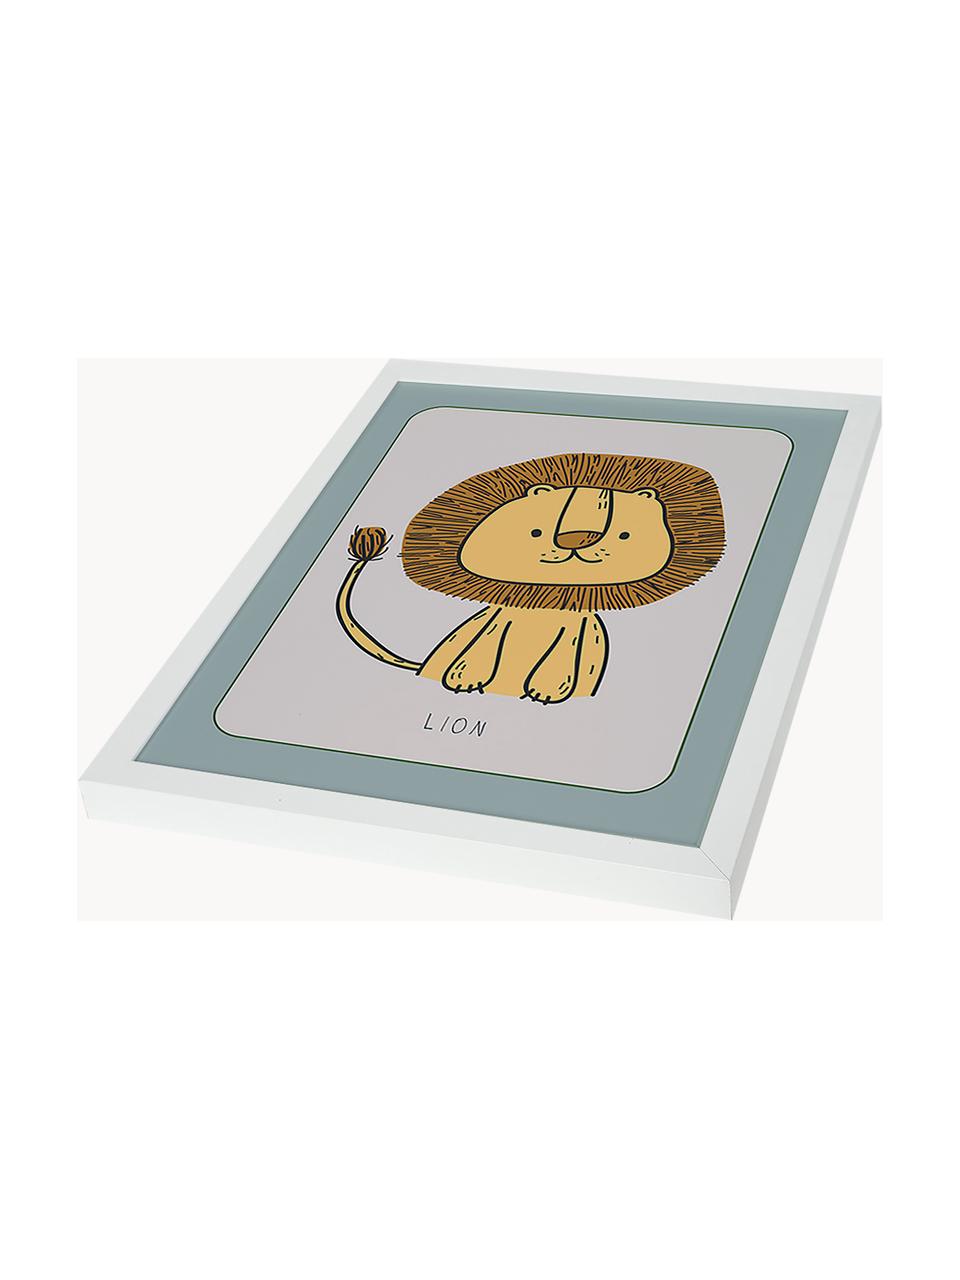 Gerahmter Digitaldruck Lion, Rahmen: Buchenholz, FSC zertifizi, Bild: Digitaldruck auf Papier, , Front: Acrylglas, Weiss, Senfgelb, Salbeigrün, B 33 x H 43 cm